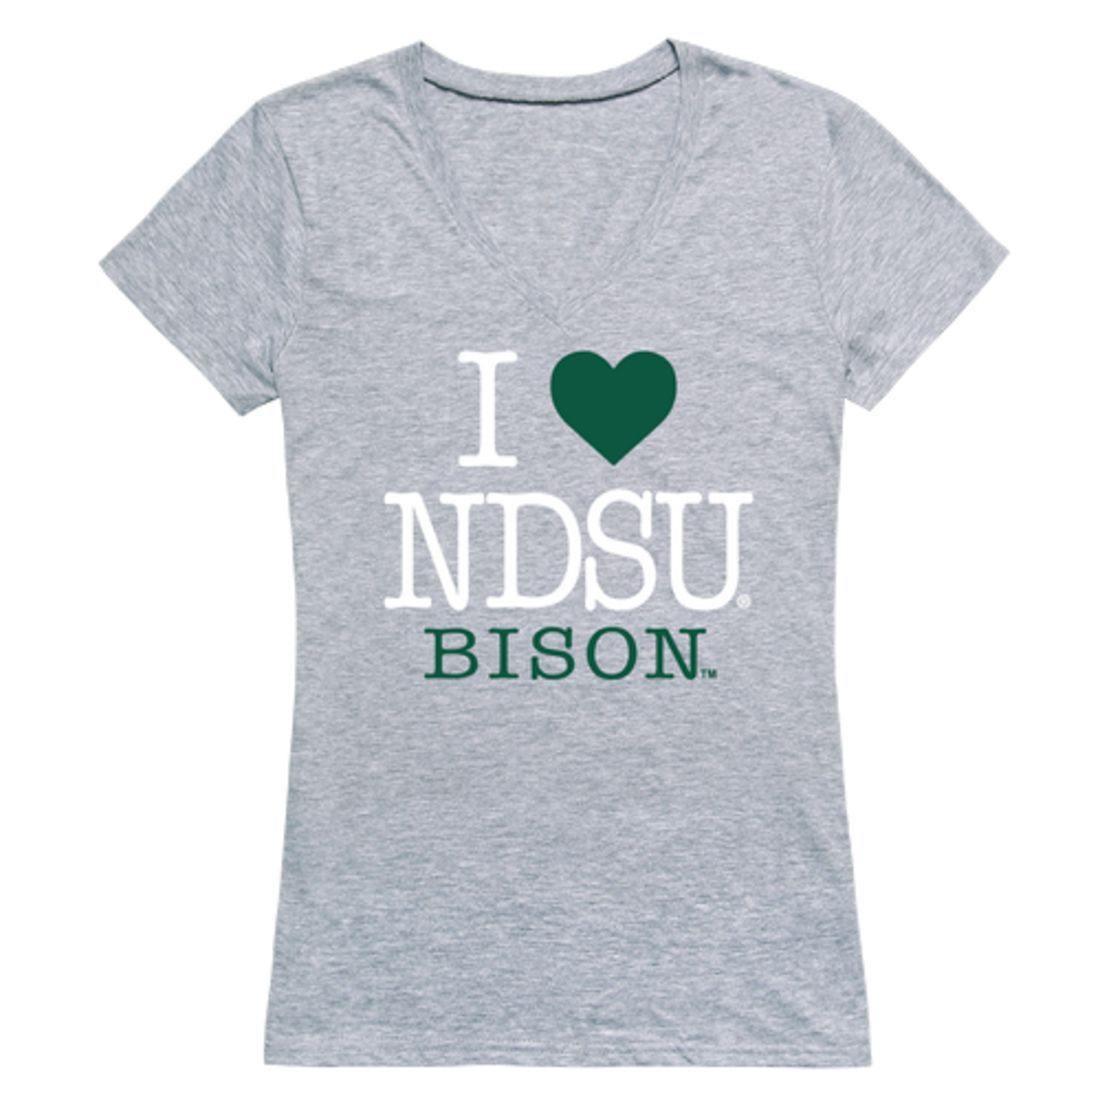 I Love NDSU North Dakota State University Bison Thundering Herd Womens T-Shirt-Campus-Wardrobe